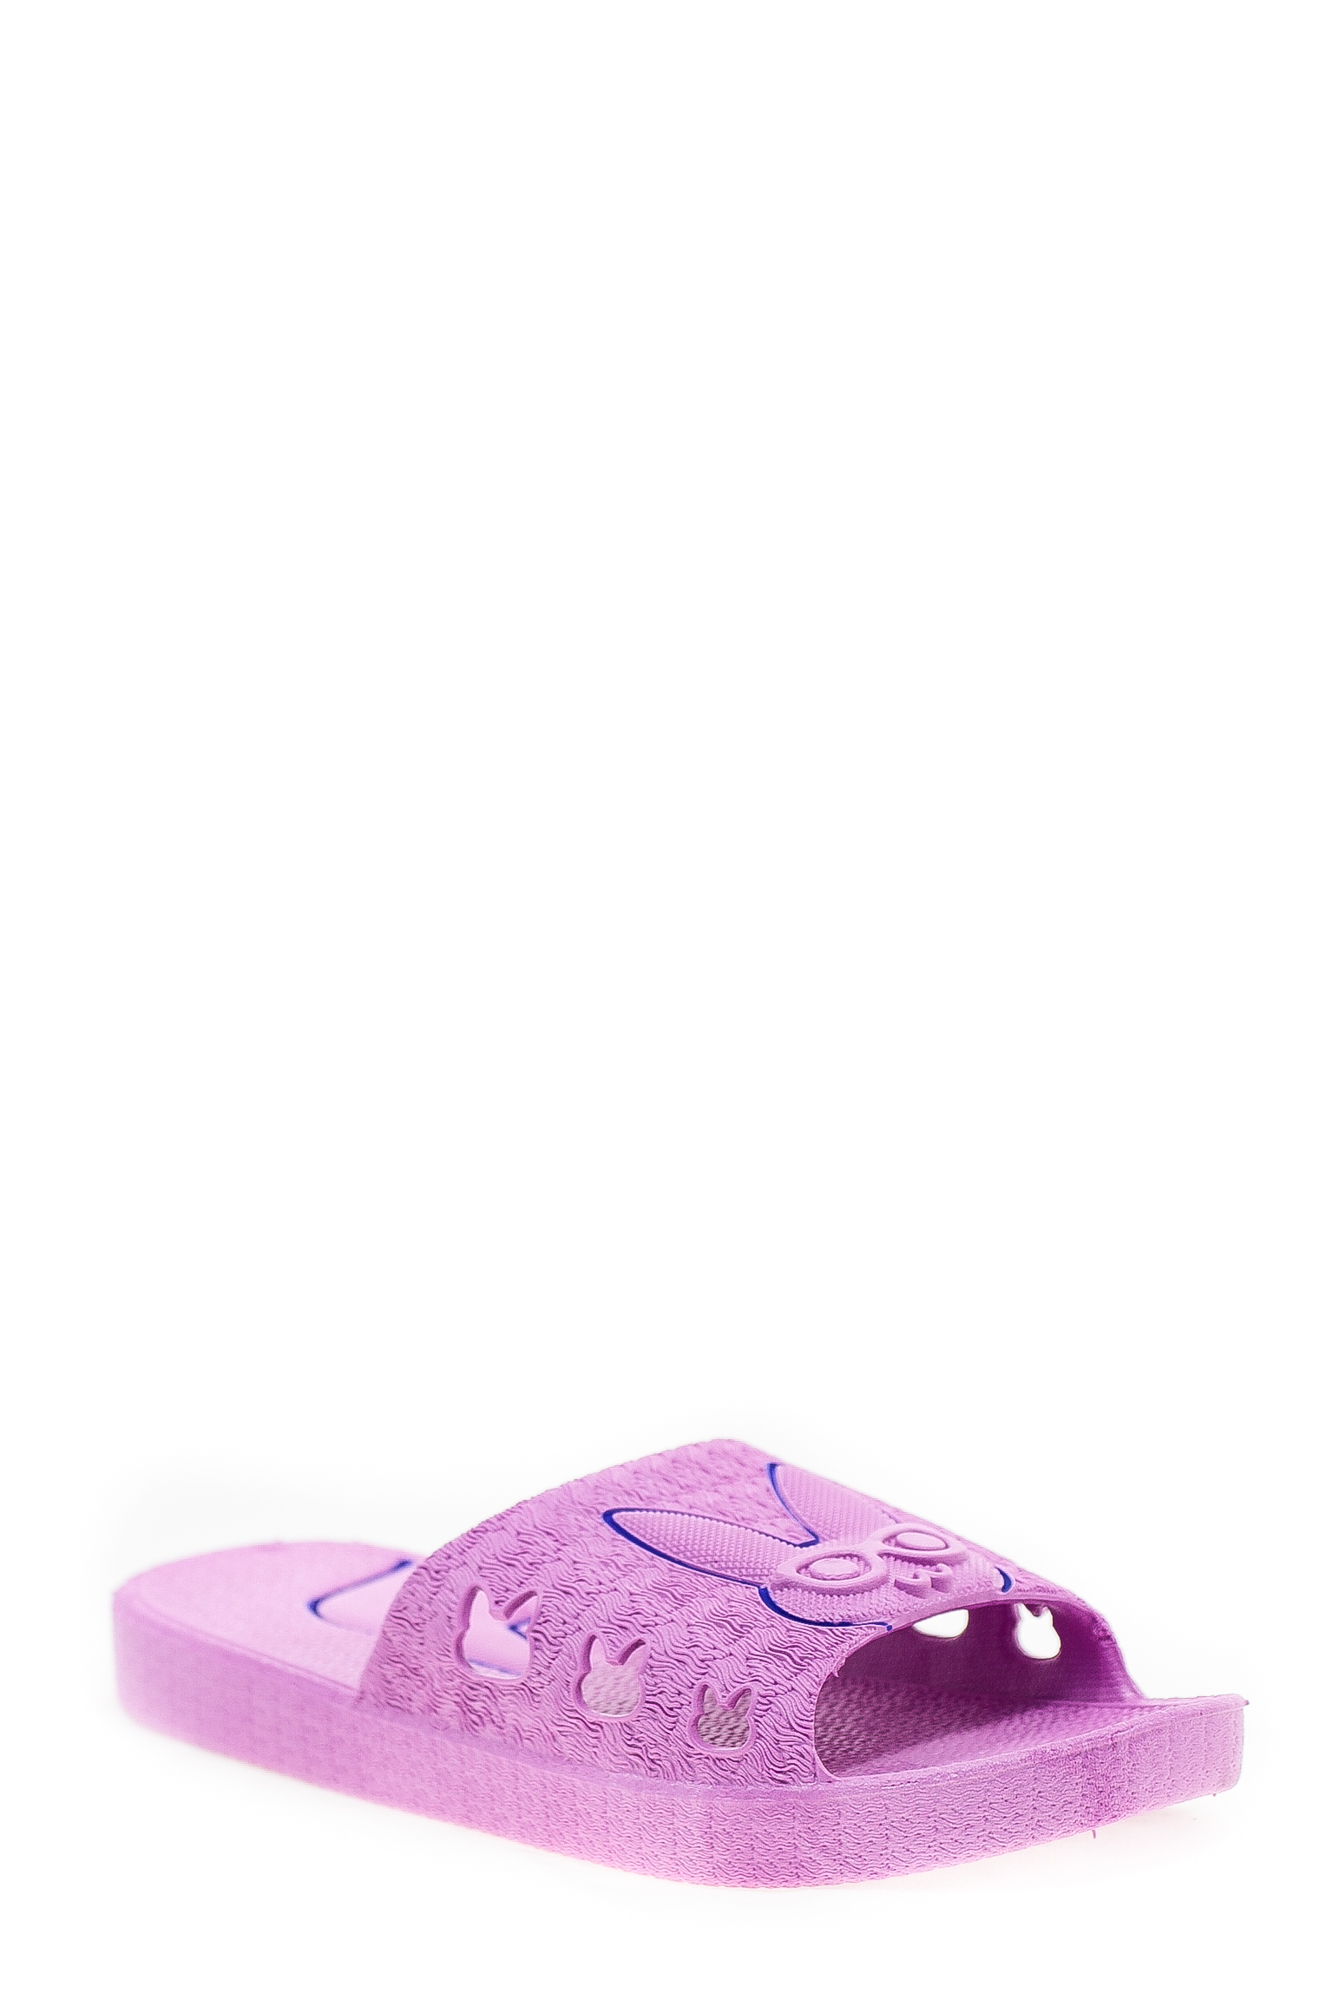 Сланцы пвх SLAN SLAN жен 1688-А заяц фиолет цвет фиолетовый.